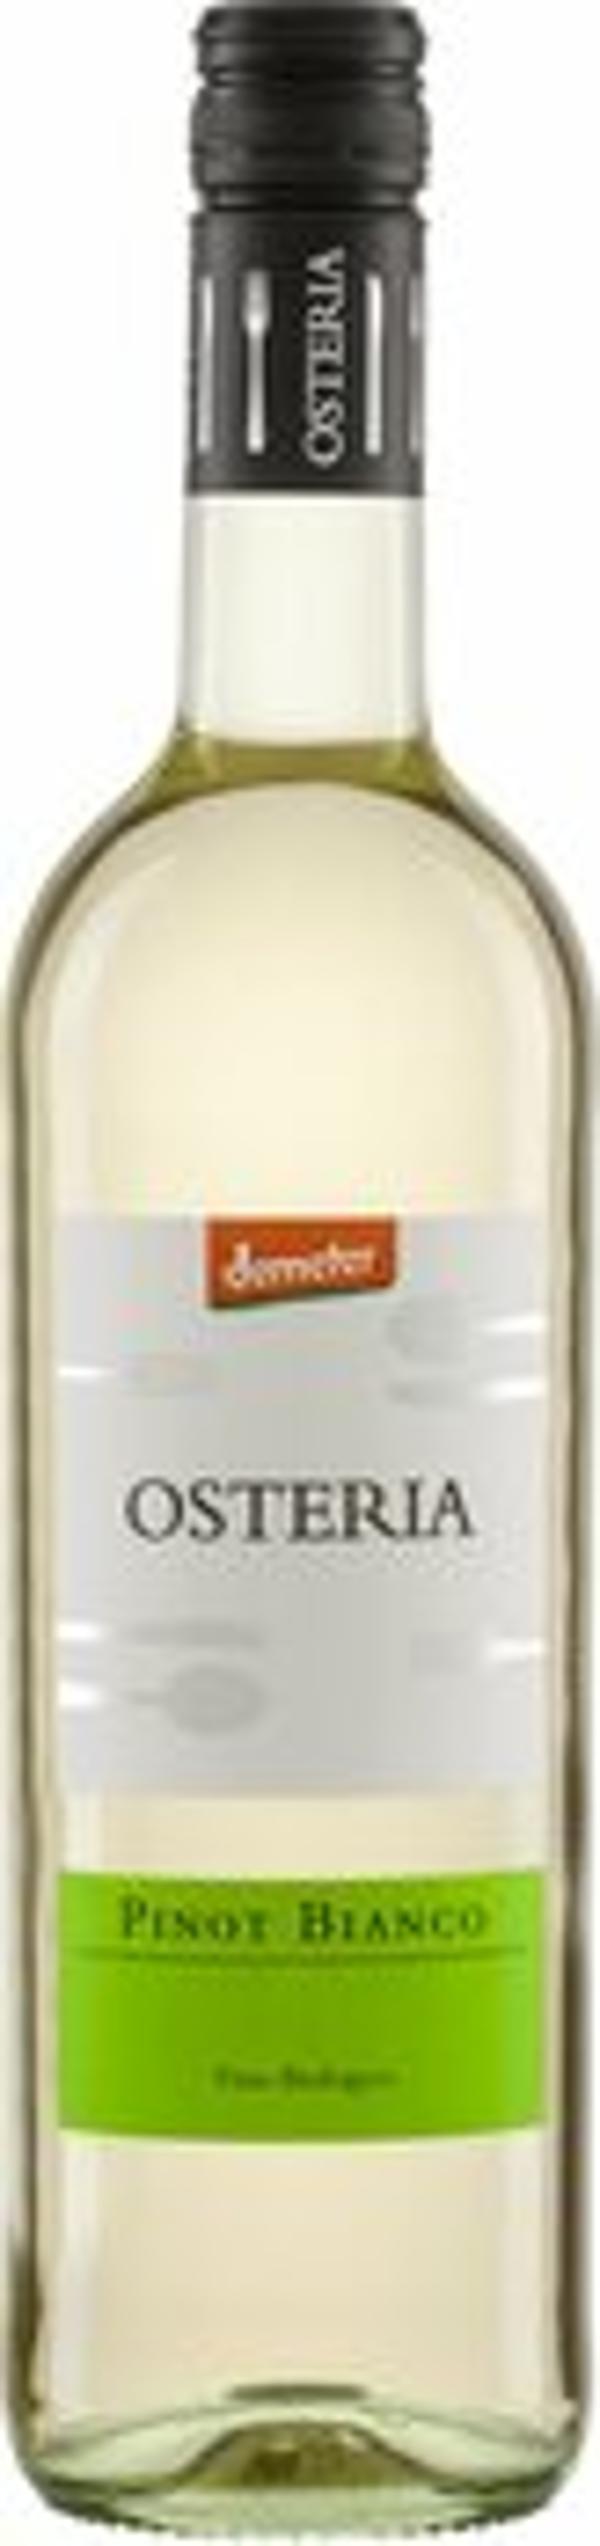 Produktfoto zu OSTERIA Pinot Bianco IGT